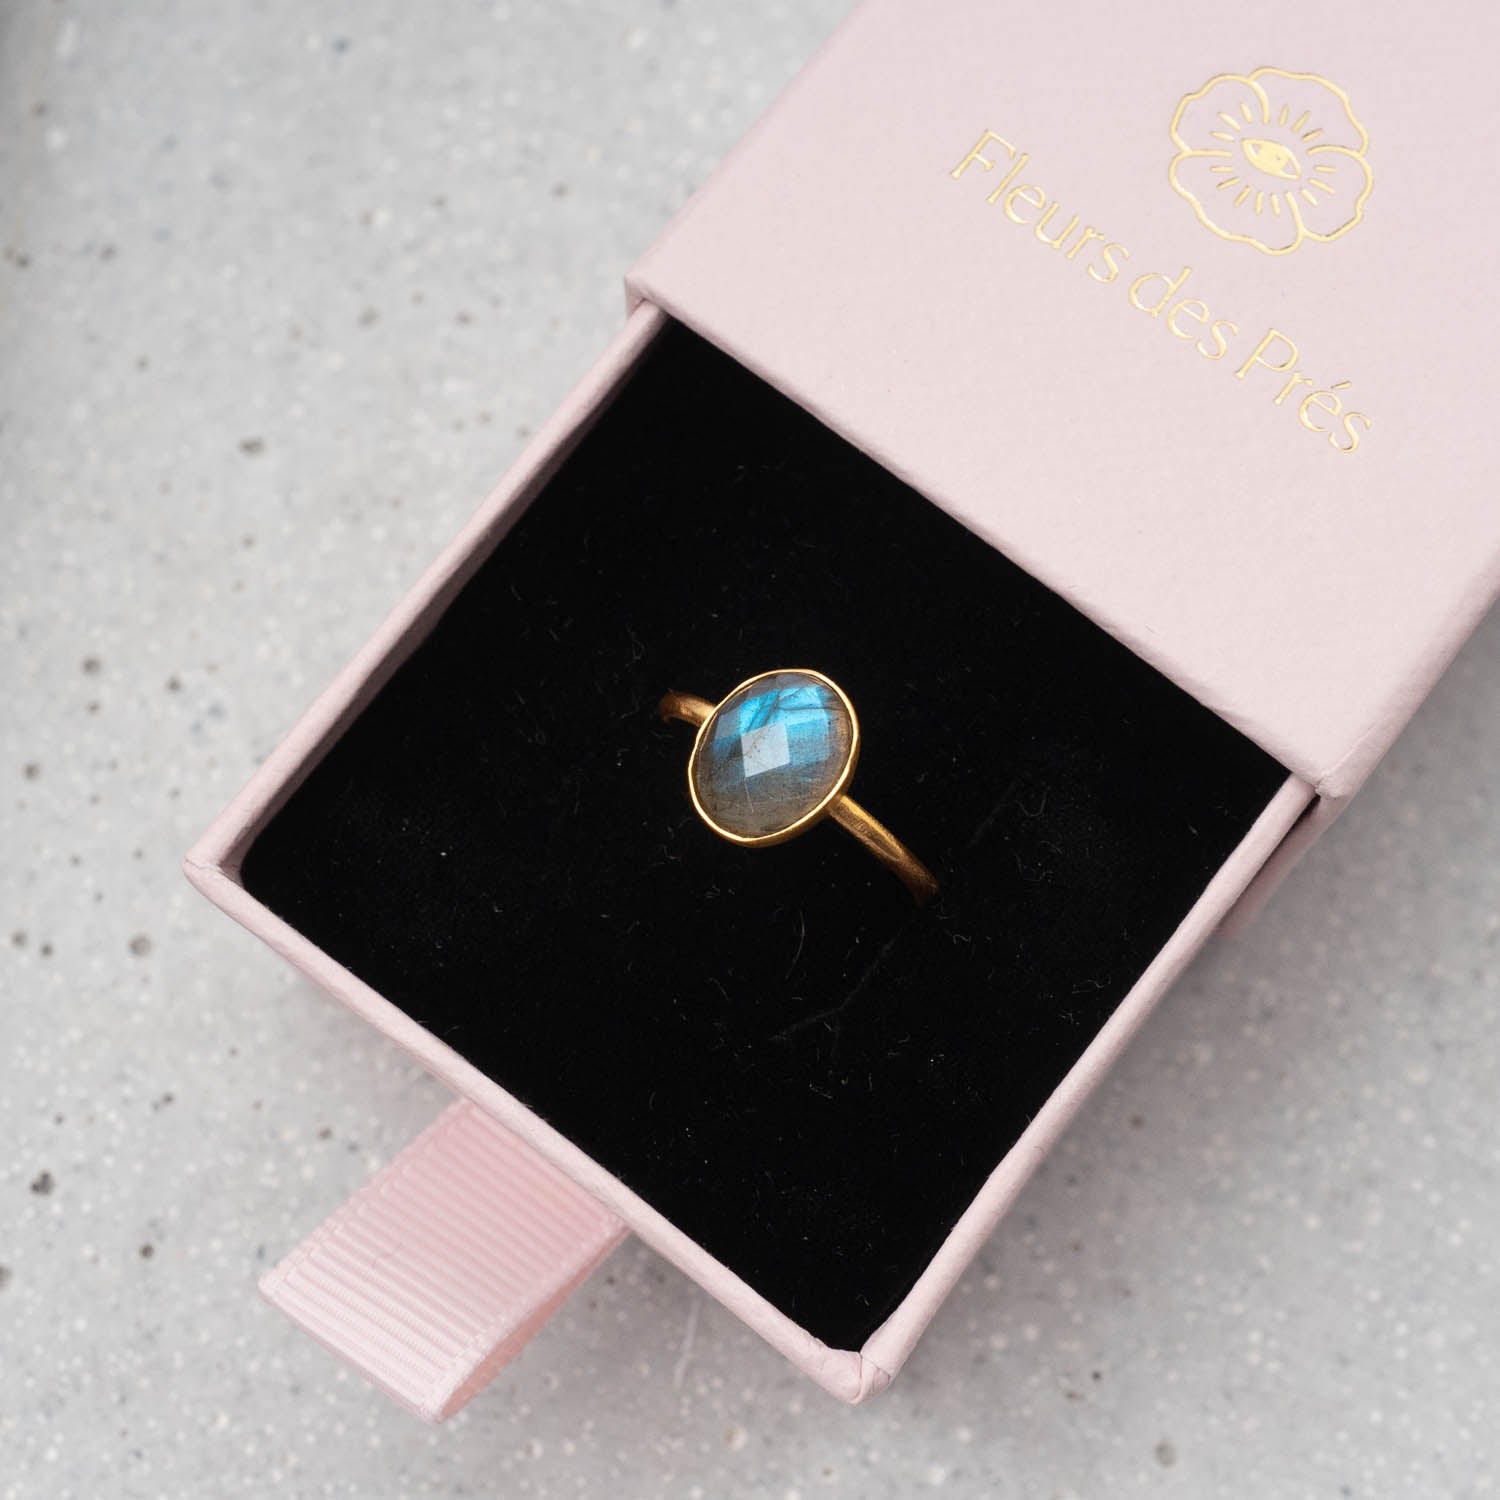 Ring Claire Labradorite - Fleurs des Prés Jewelry